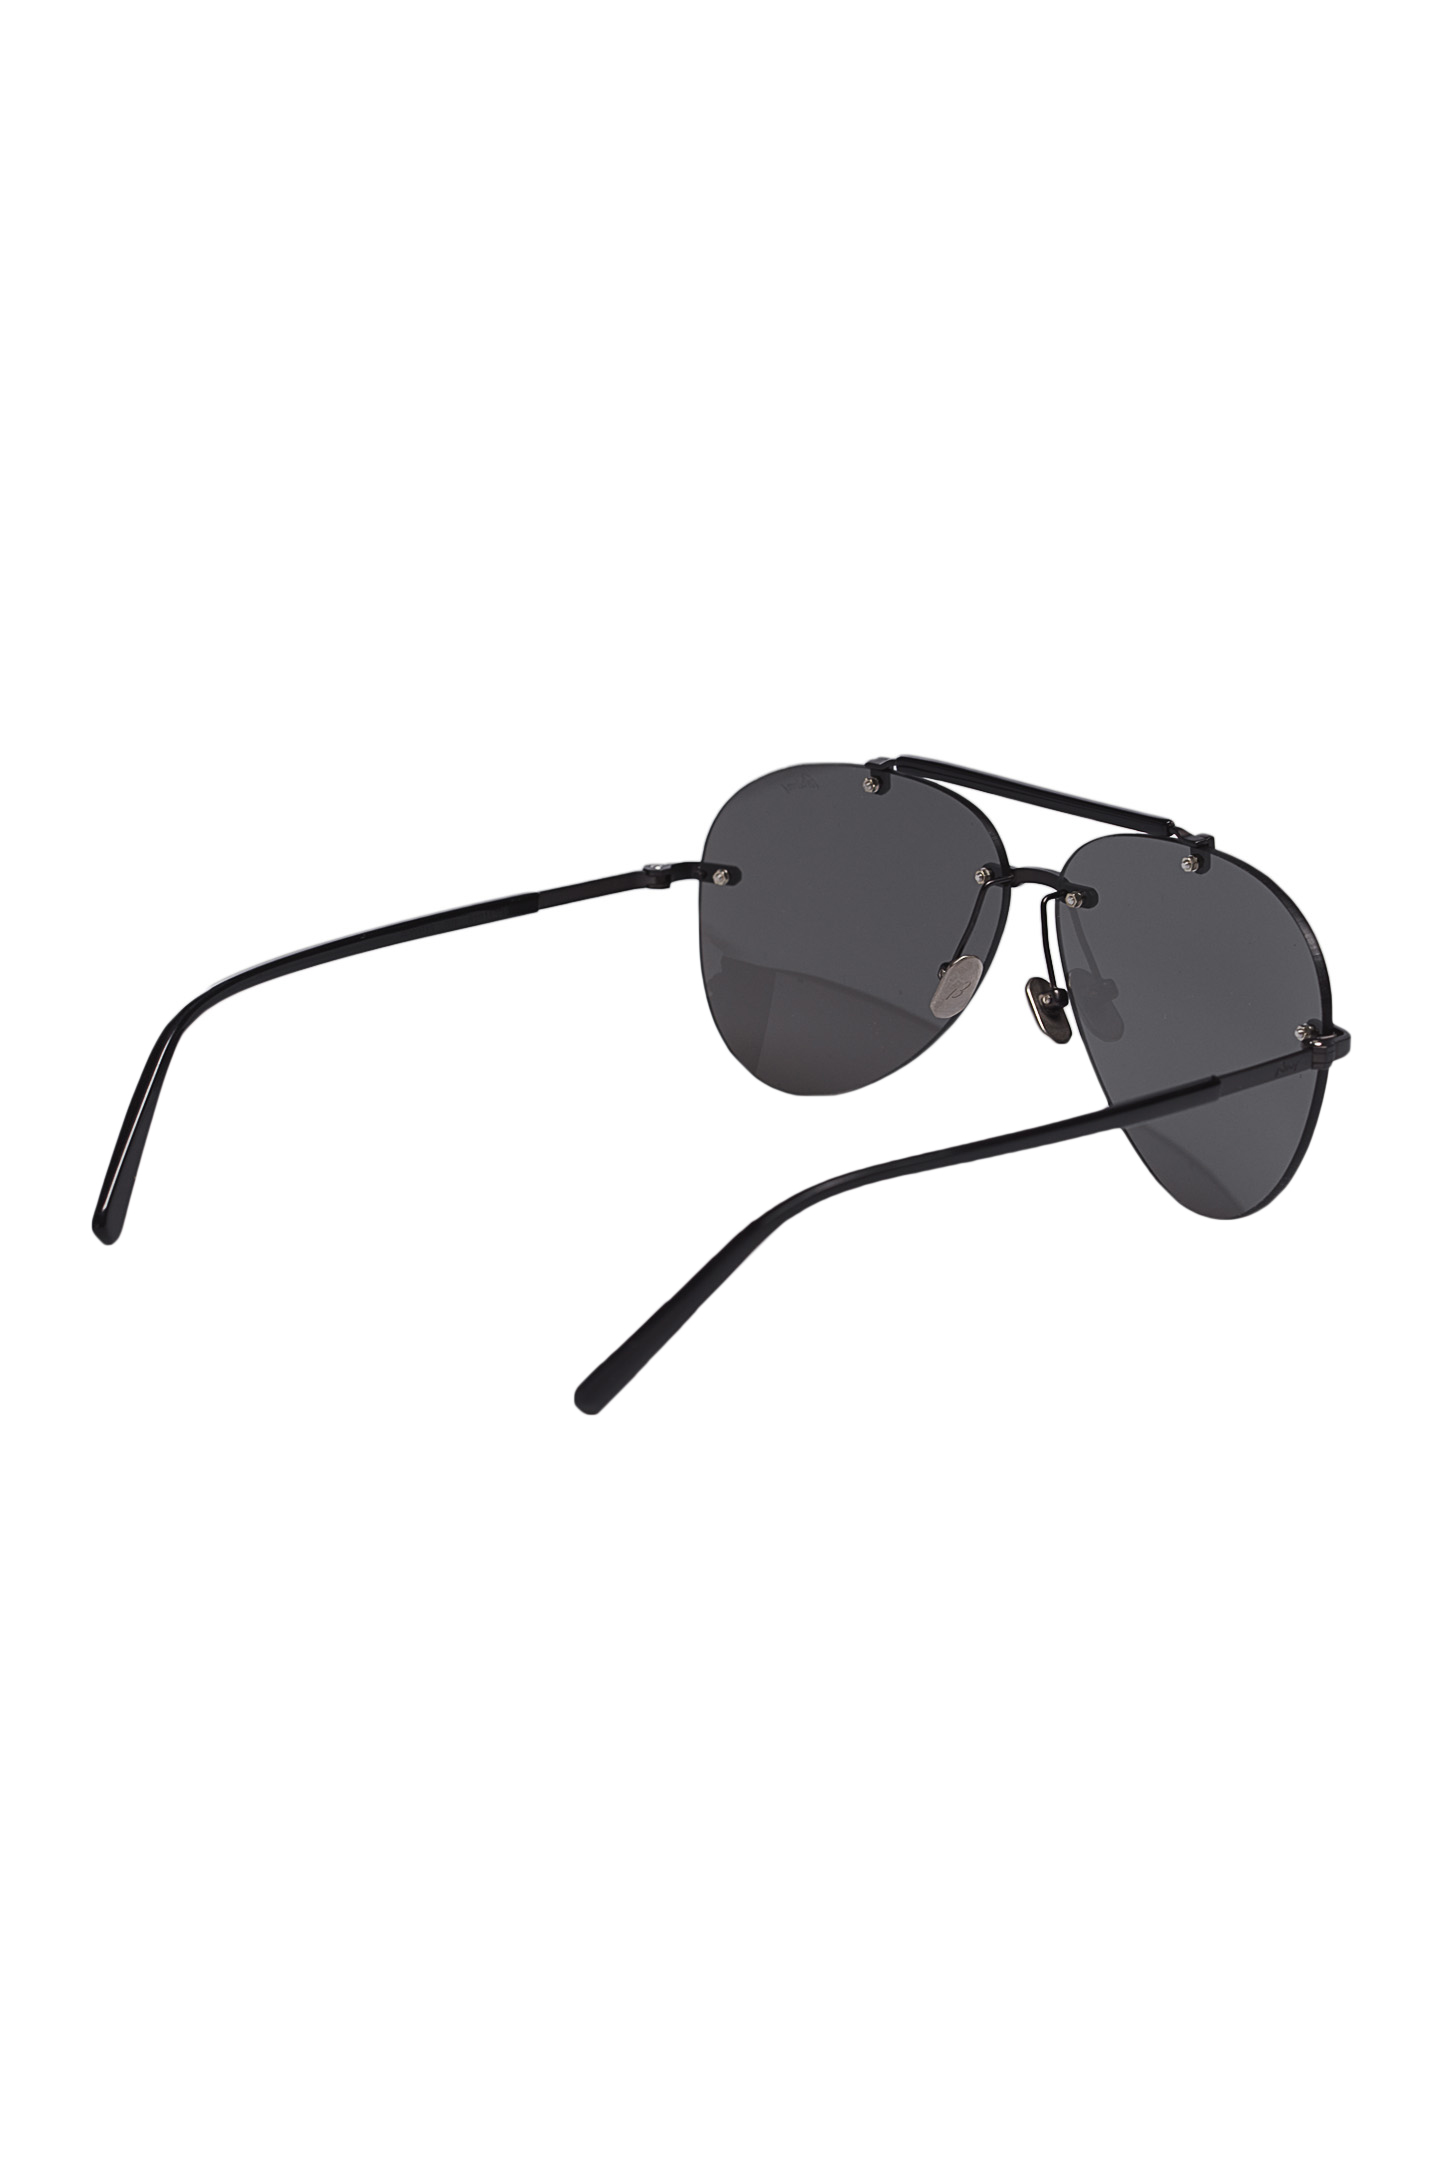 Солнцезащитные очки BRIONI ODB300 P3ZAE, цвет: Черный, Мужской